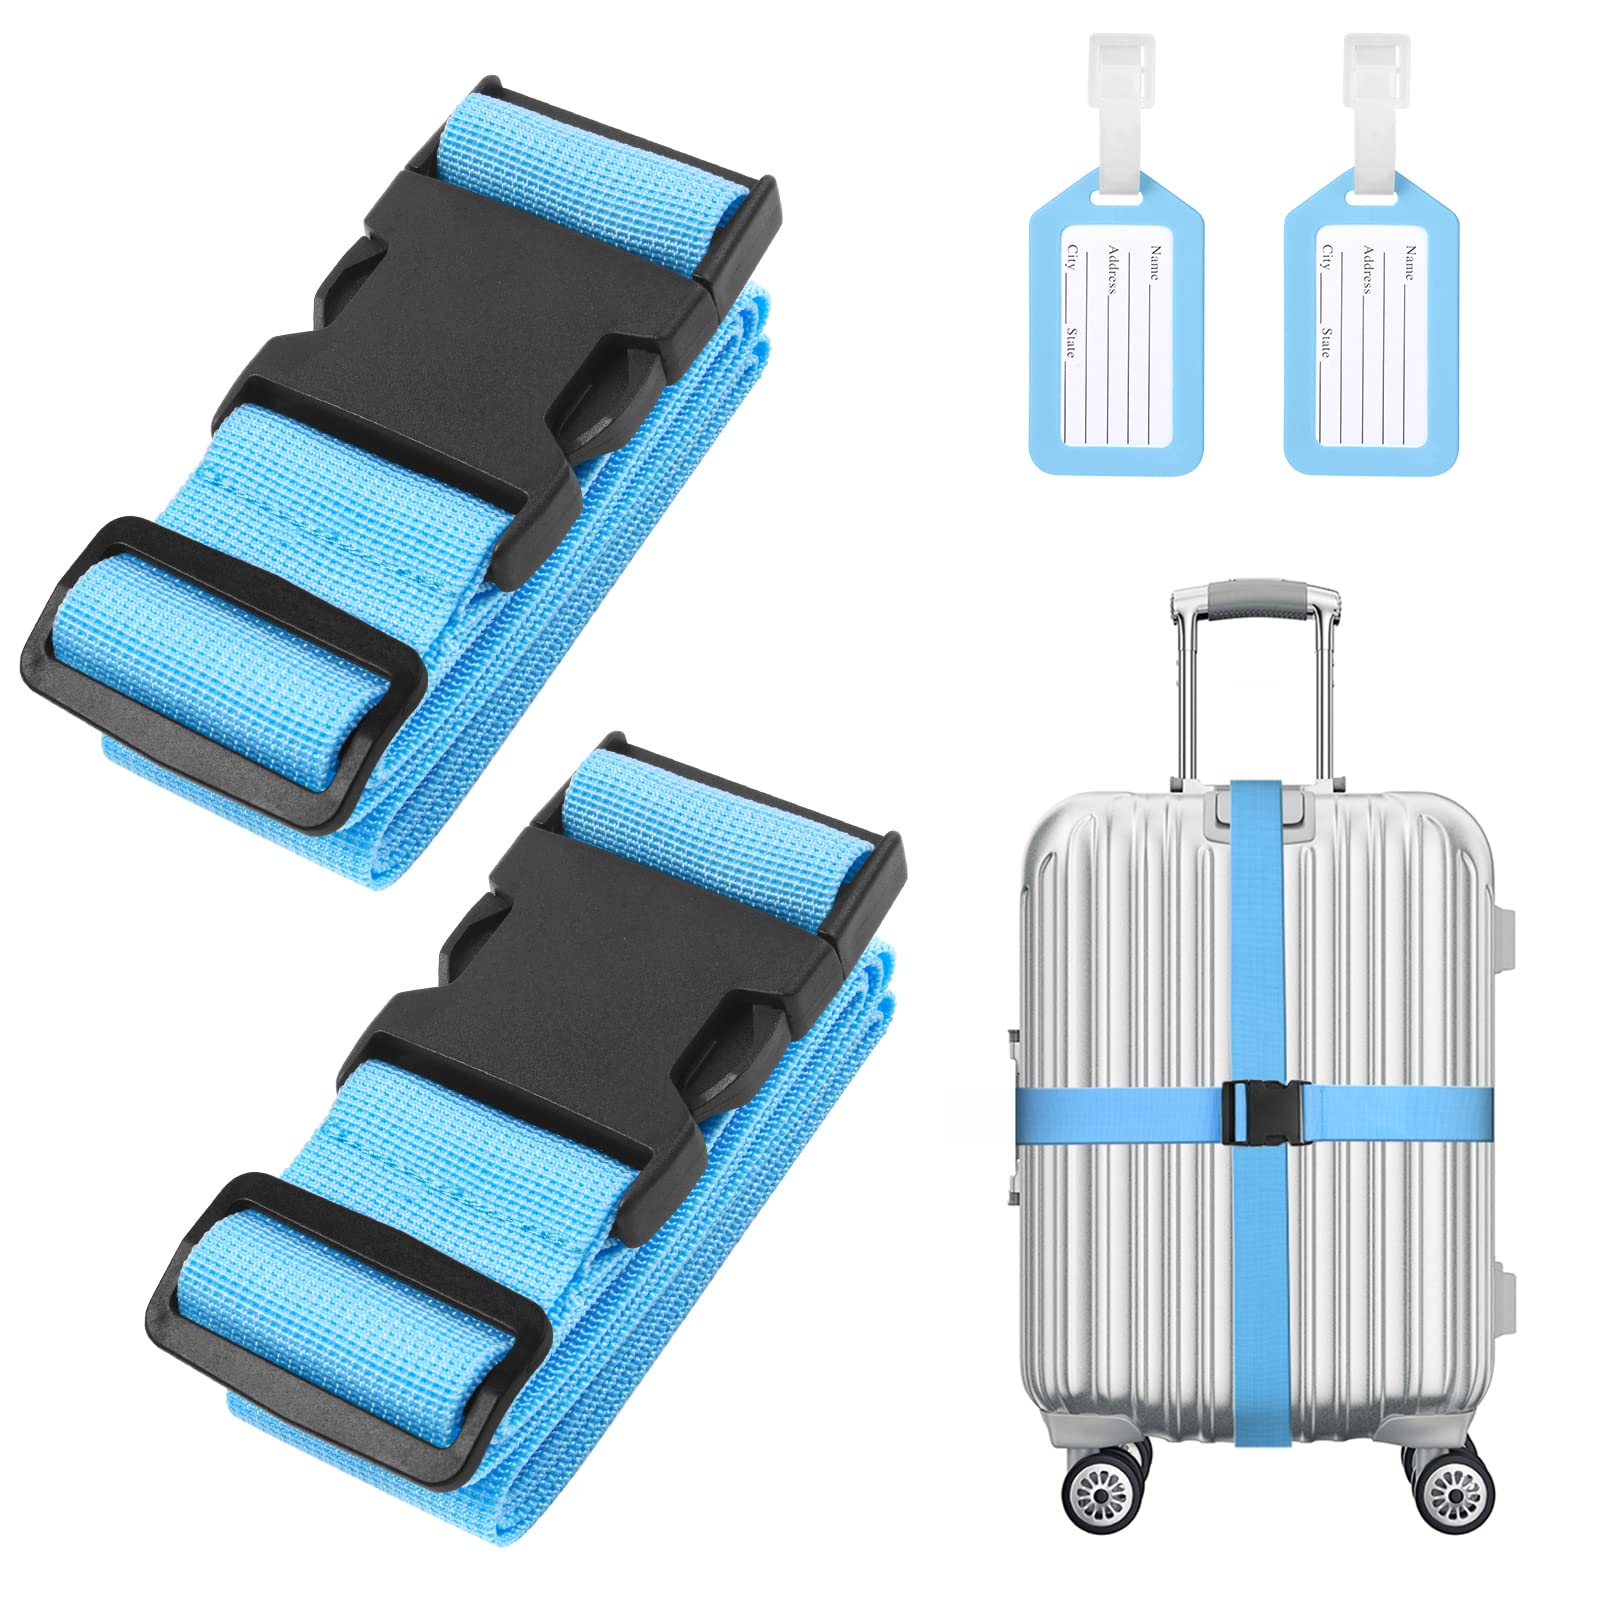 Flintronic 2-Stück Premium Gepäckgurt Koffergurt Kofferband Einstellbare rutschfest Gepäckband Lang kofferbänder Luggage Strap + 2 Stück Kofferanhänger Sicher Reisen für Koffer - Blau von flintronic